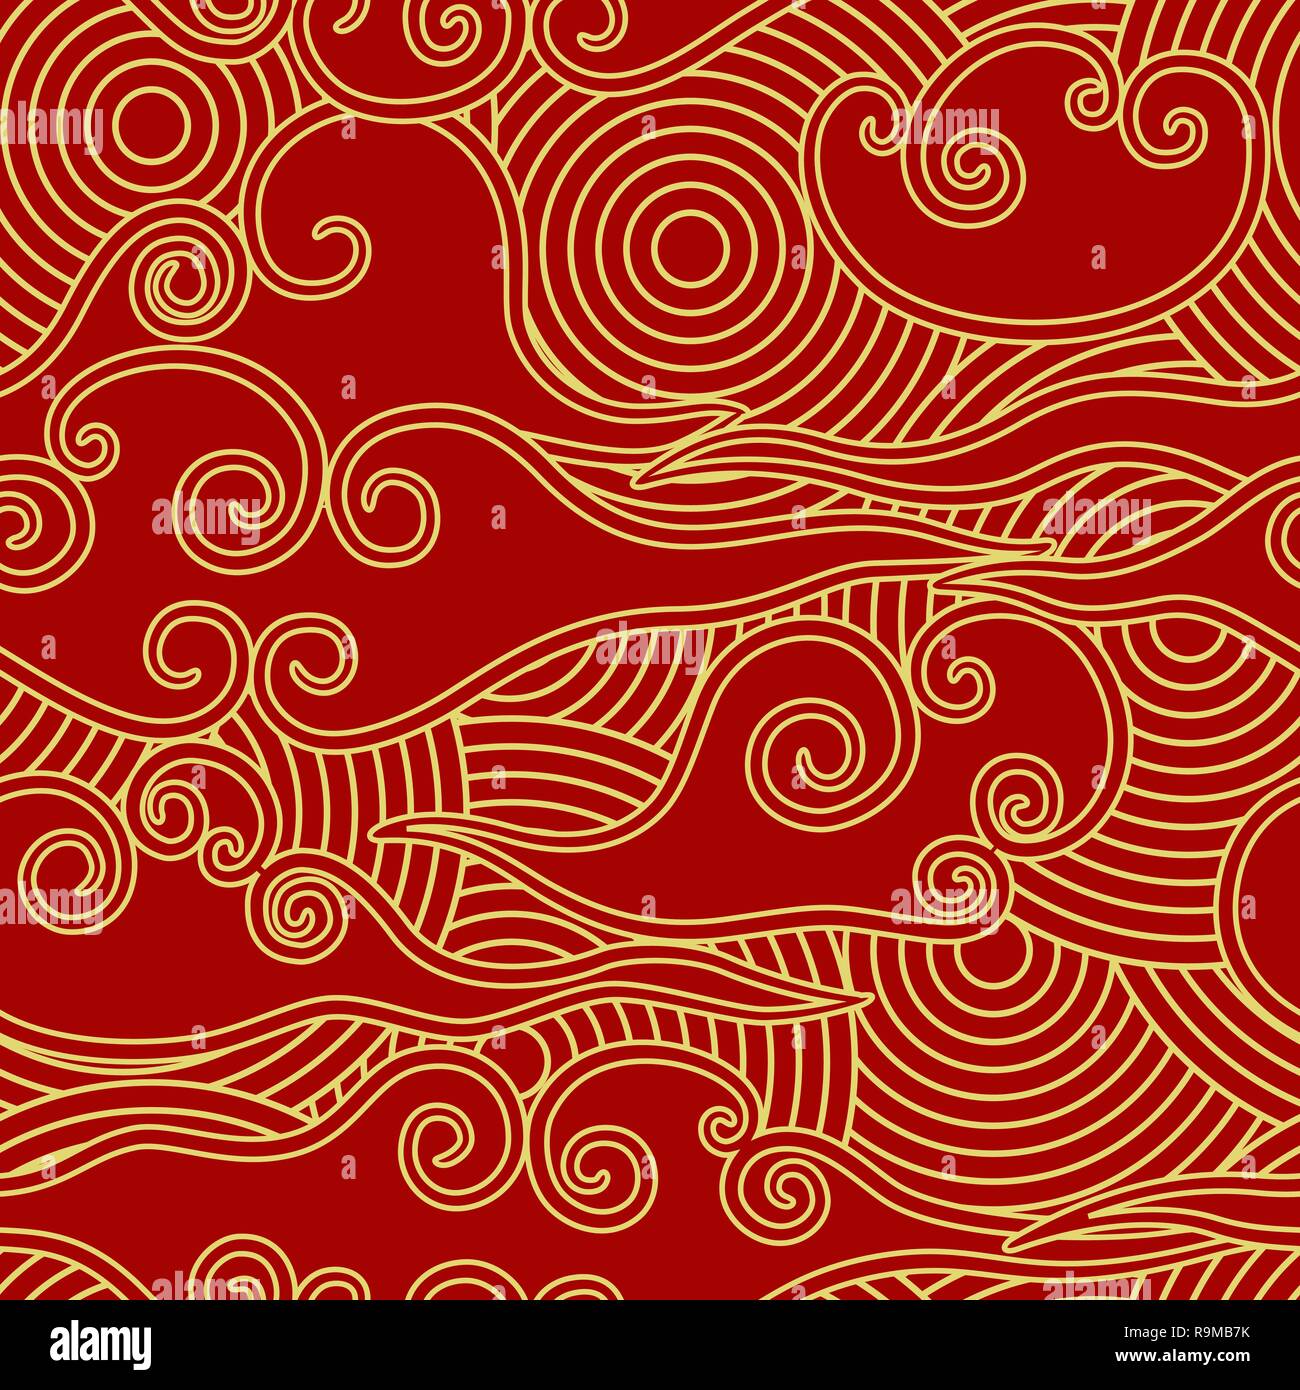 Der traditionellen chinesischen Stil Wolken und Kreise Skala rot und gold nahtlose Muster Stock Vektor